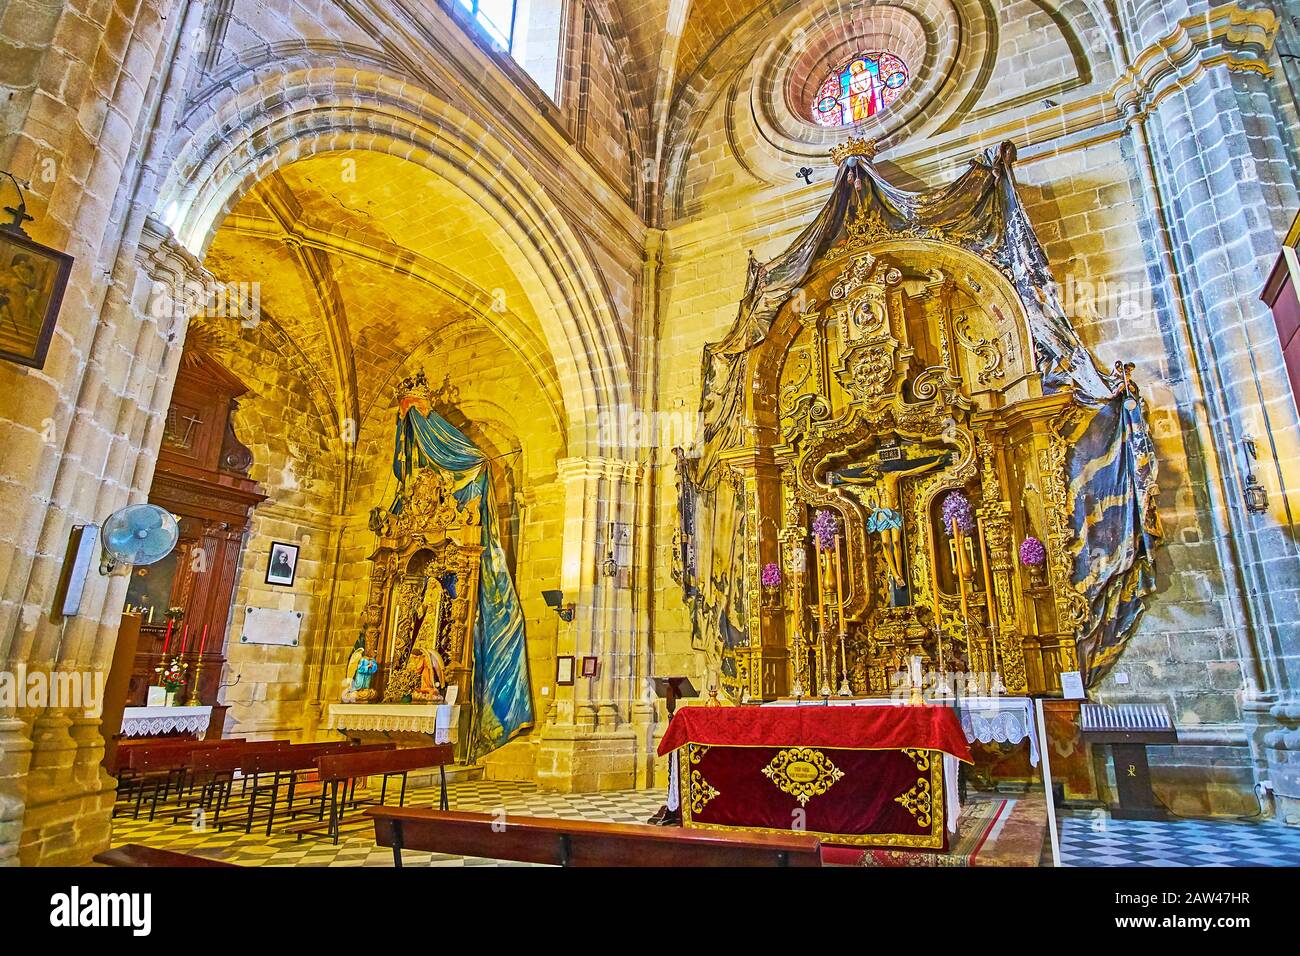 Jerez, SPANIEN - 20. SEPTEMBER 2019: Die aufwendige vergoldete und geschnitzte Dekoration des Cristo de la Viga-Altarbildes, das sich in der Heilig-Erlöser-Kathedrale auf Se befindet Stockfoto